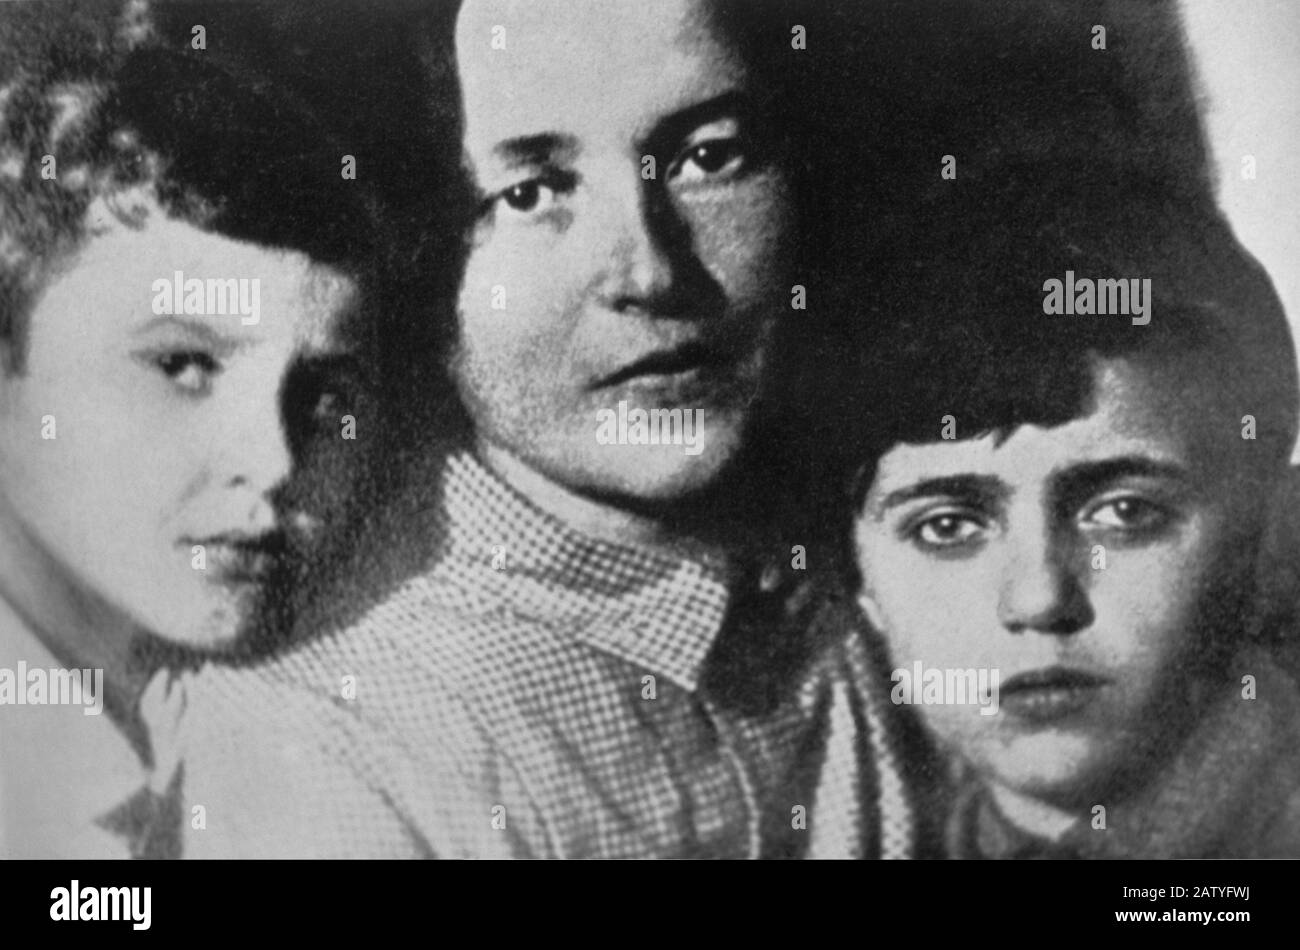 1930 's : GIULIA SCHUCHT , russische Frau des italienischen kommunistischen Intellektuellen ANTONIO GRAMSCI ( 1891 - 1937 ) , mit Söhnen DELIO und GIULIANO - PAR Stockfoto